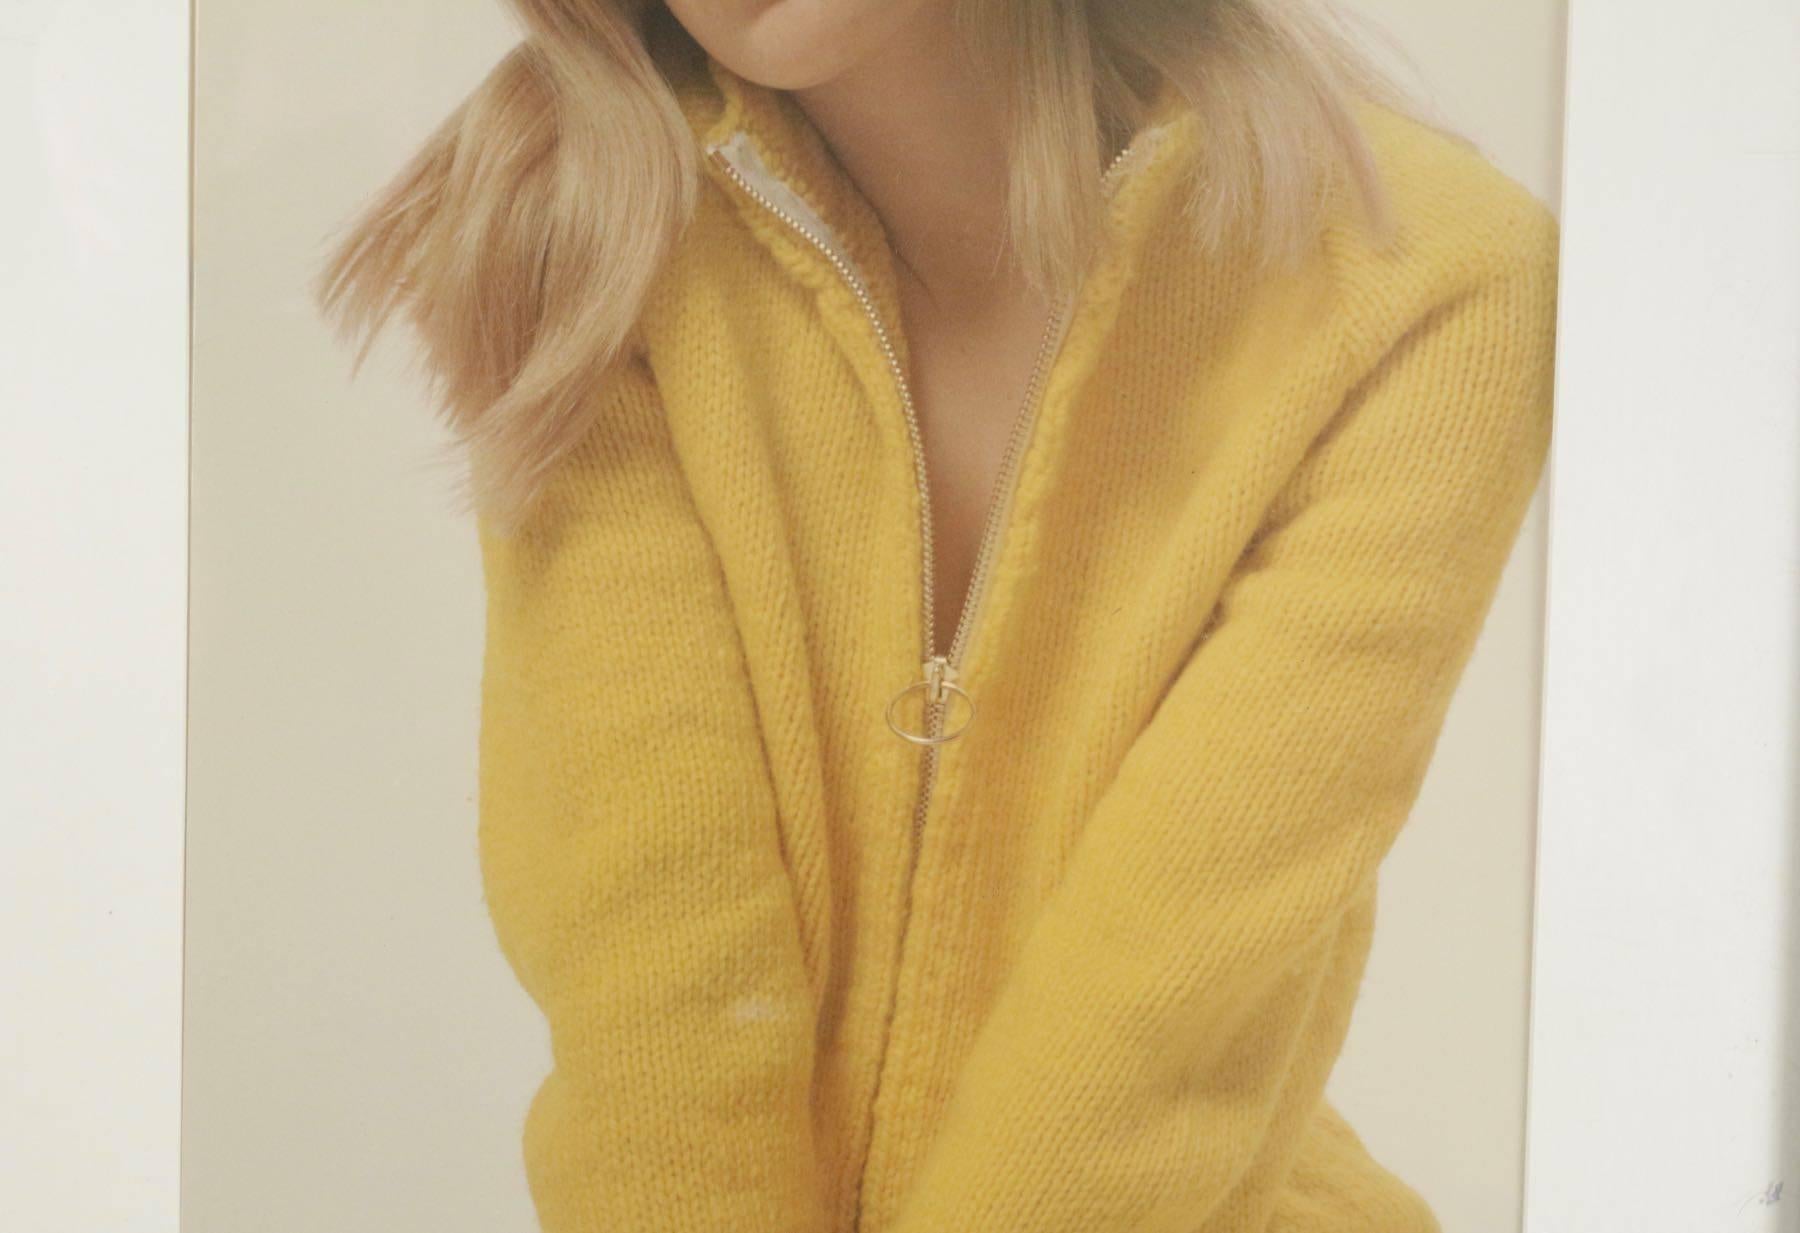 Original-Modefoto des Fotografen Robert Jean Chapuis, Paris, signiert, das ein Mädchen in einem gelben Pullover zeigt, ca. 1970er Jahre.
Maßnahmen:
Ohne Rahmen 49,5 cm x 35 cm,
mit Rahmen 68 cm x 54 cm.
  